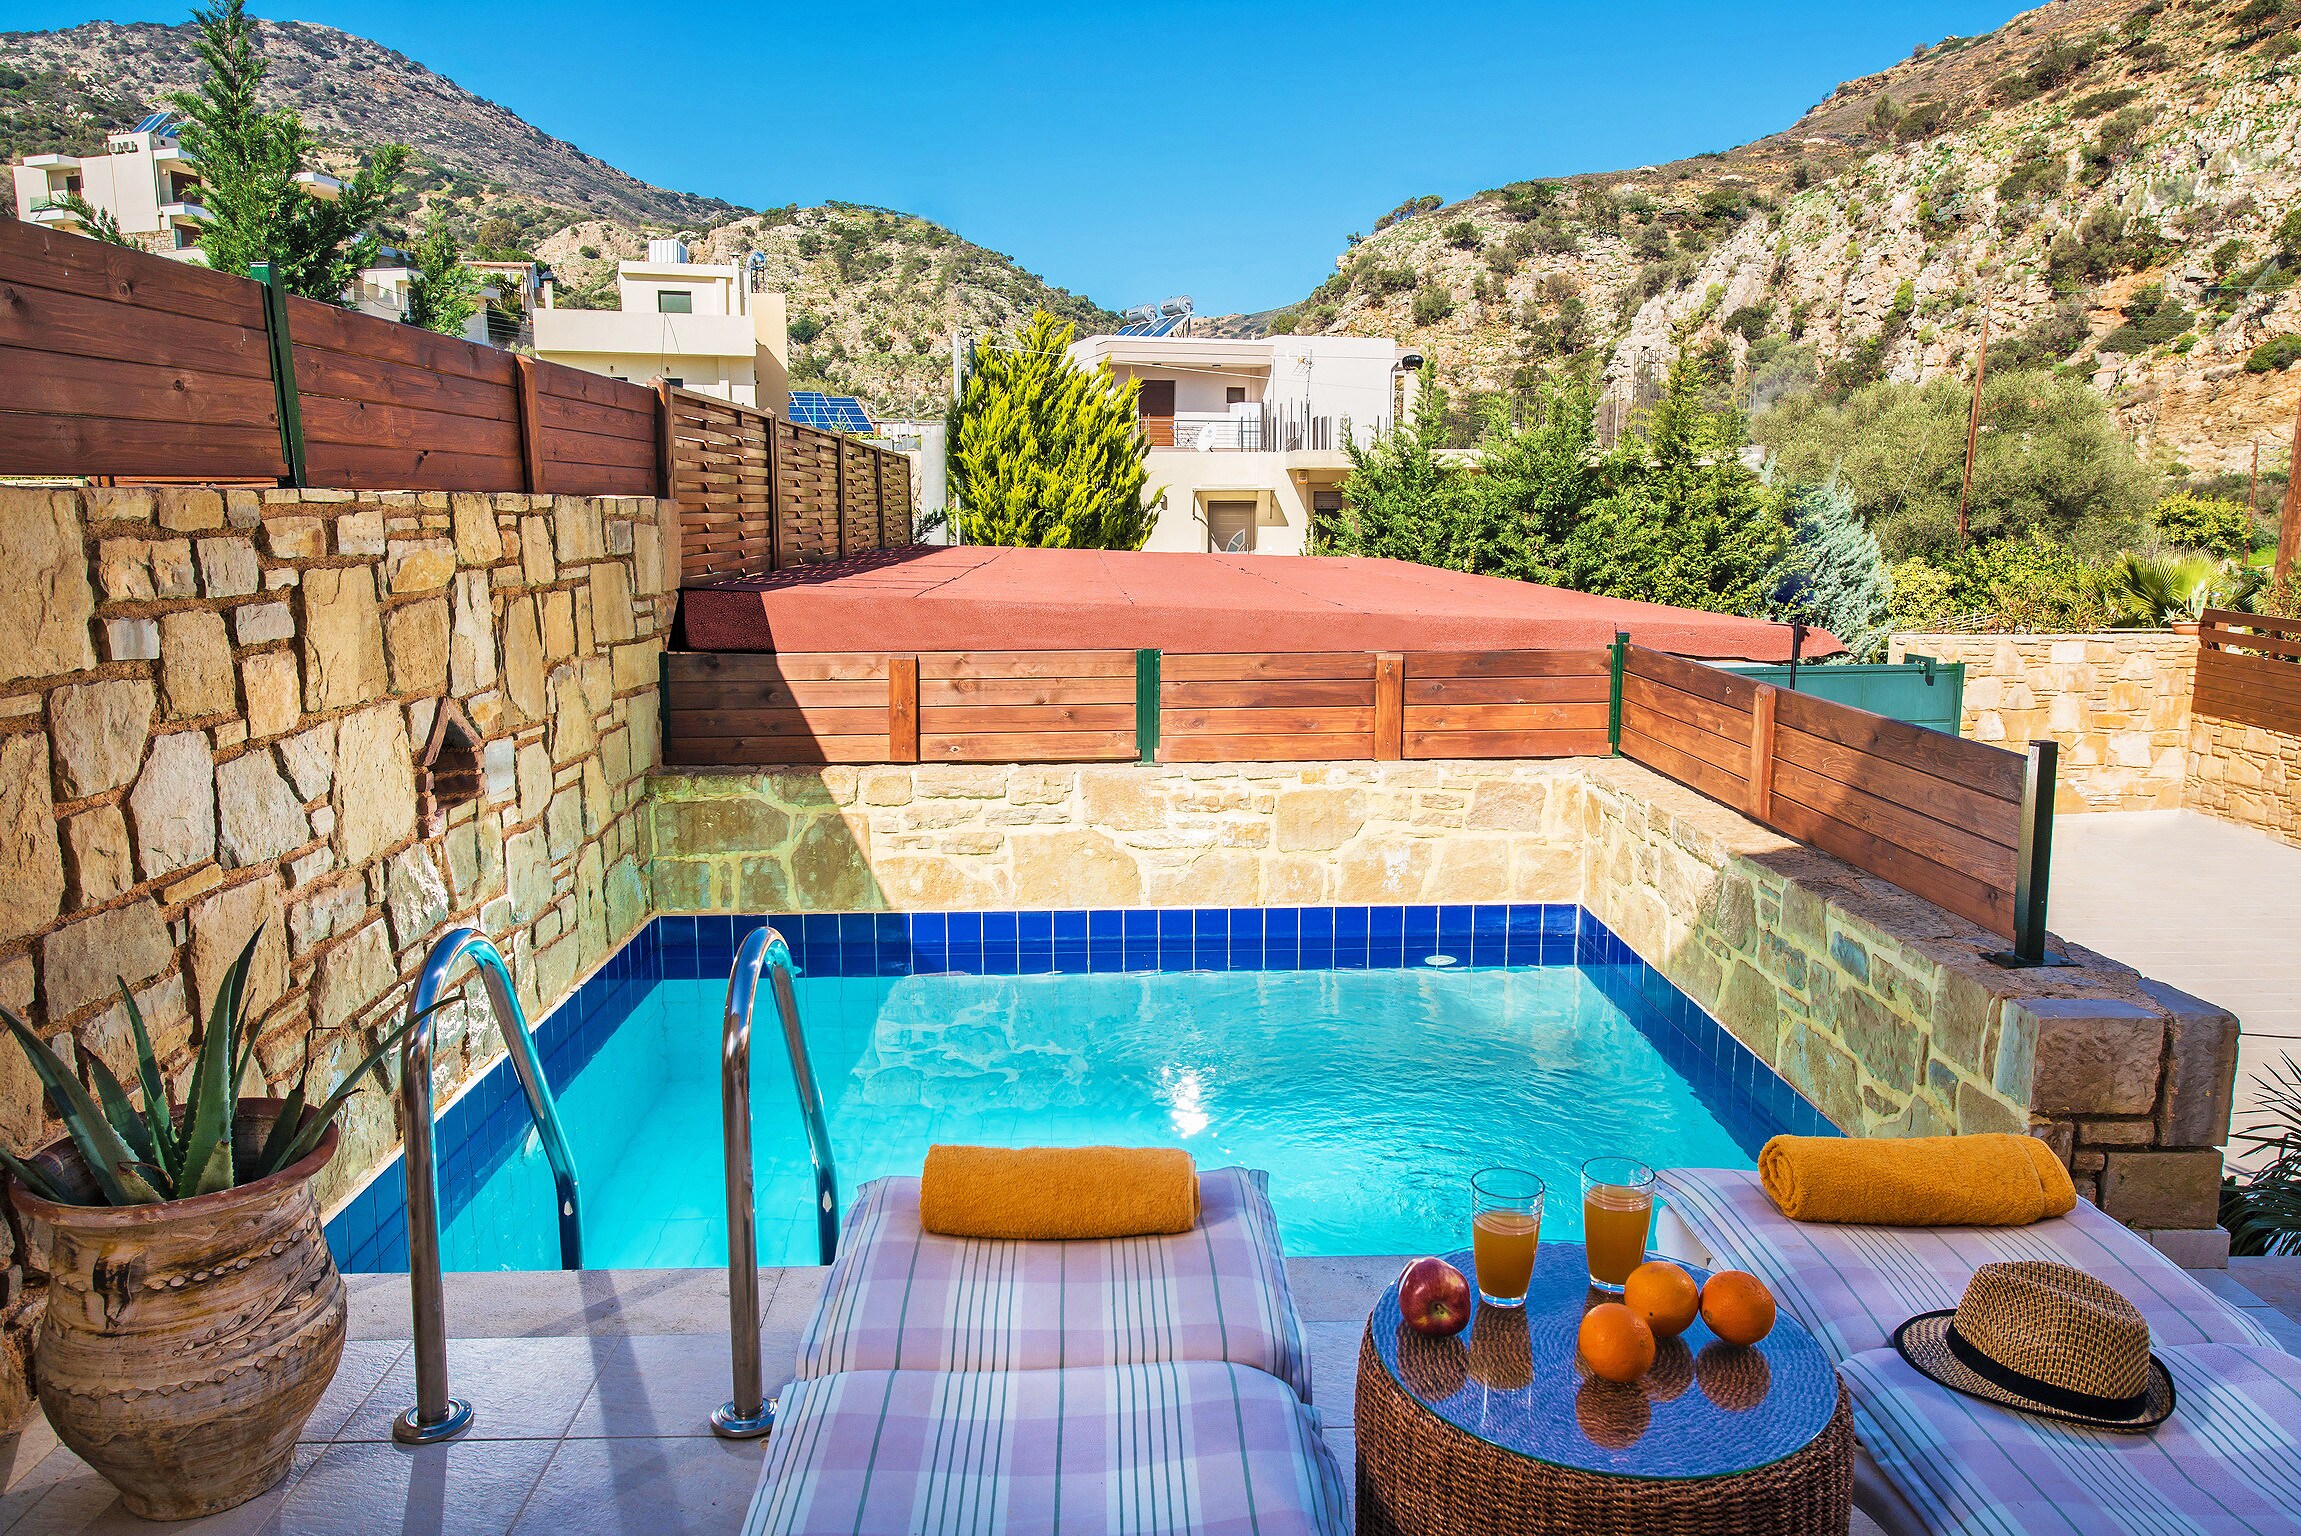 Swimming pool area of the villas complex in Paleokastro, Heraklion, Crete